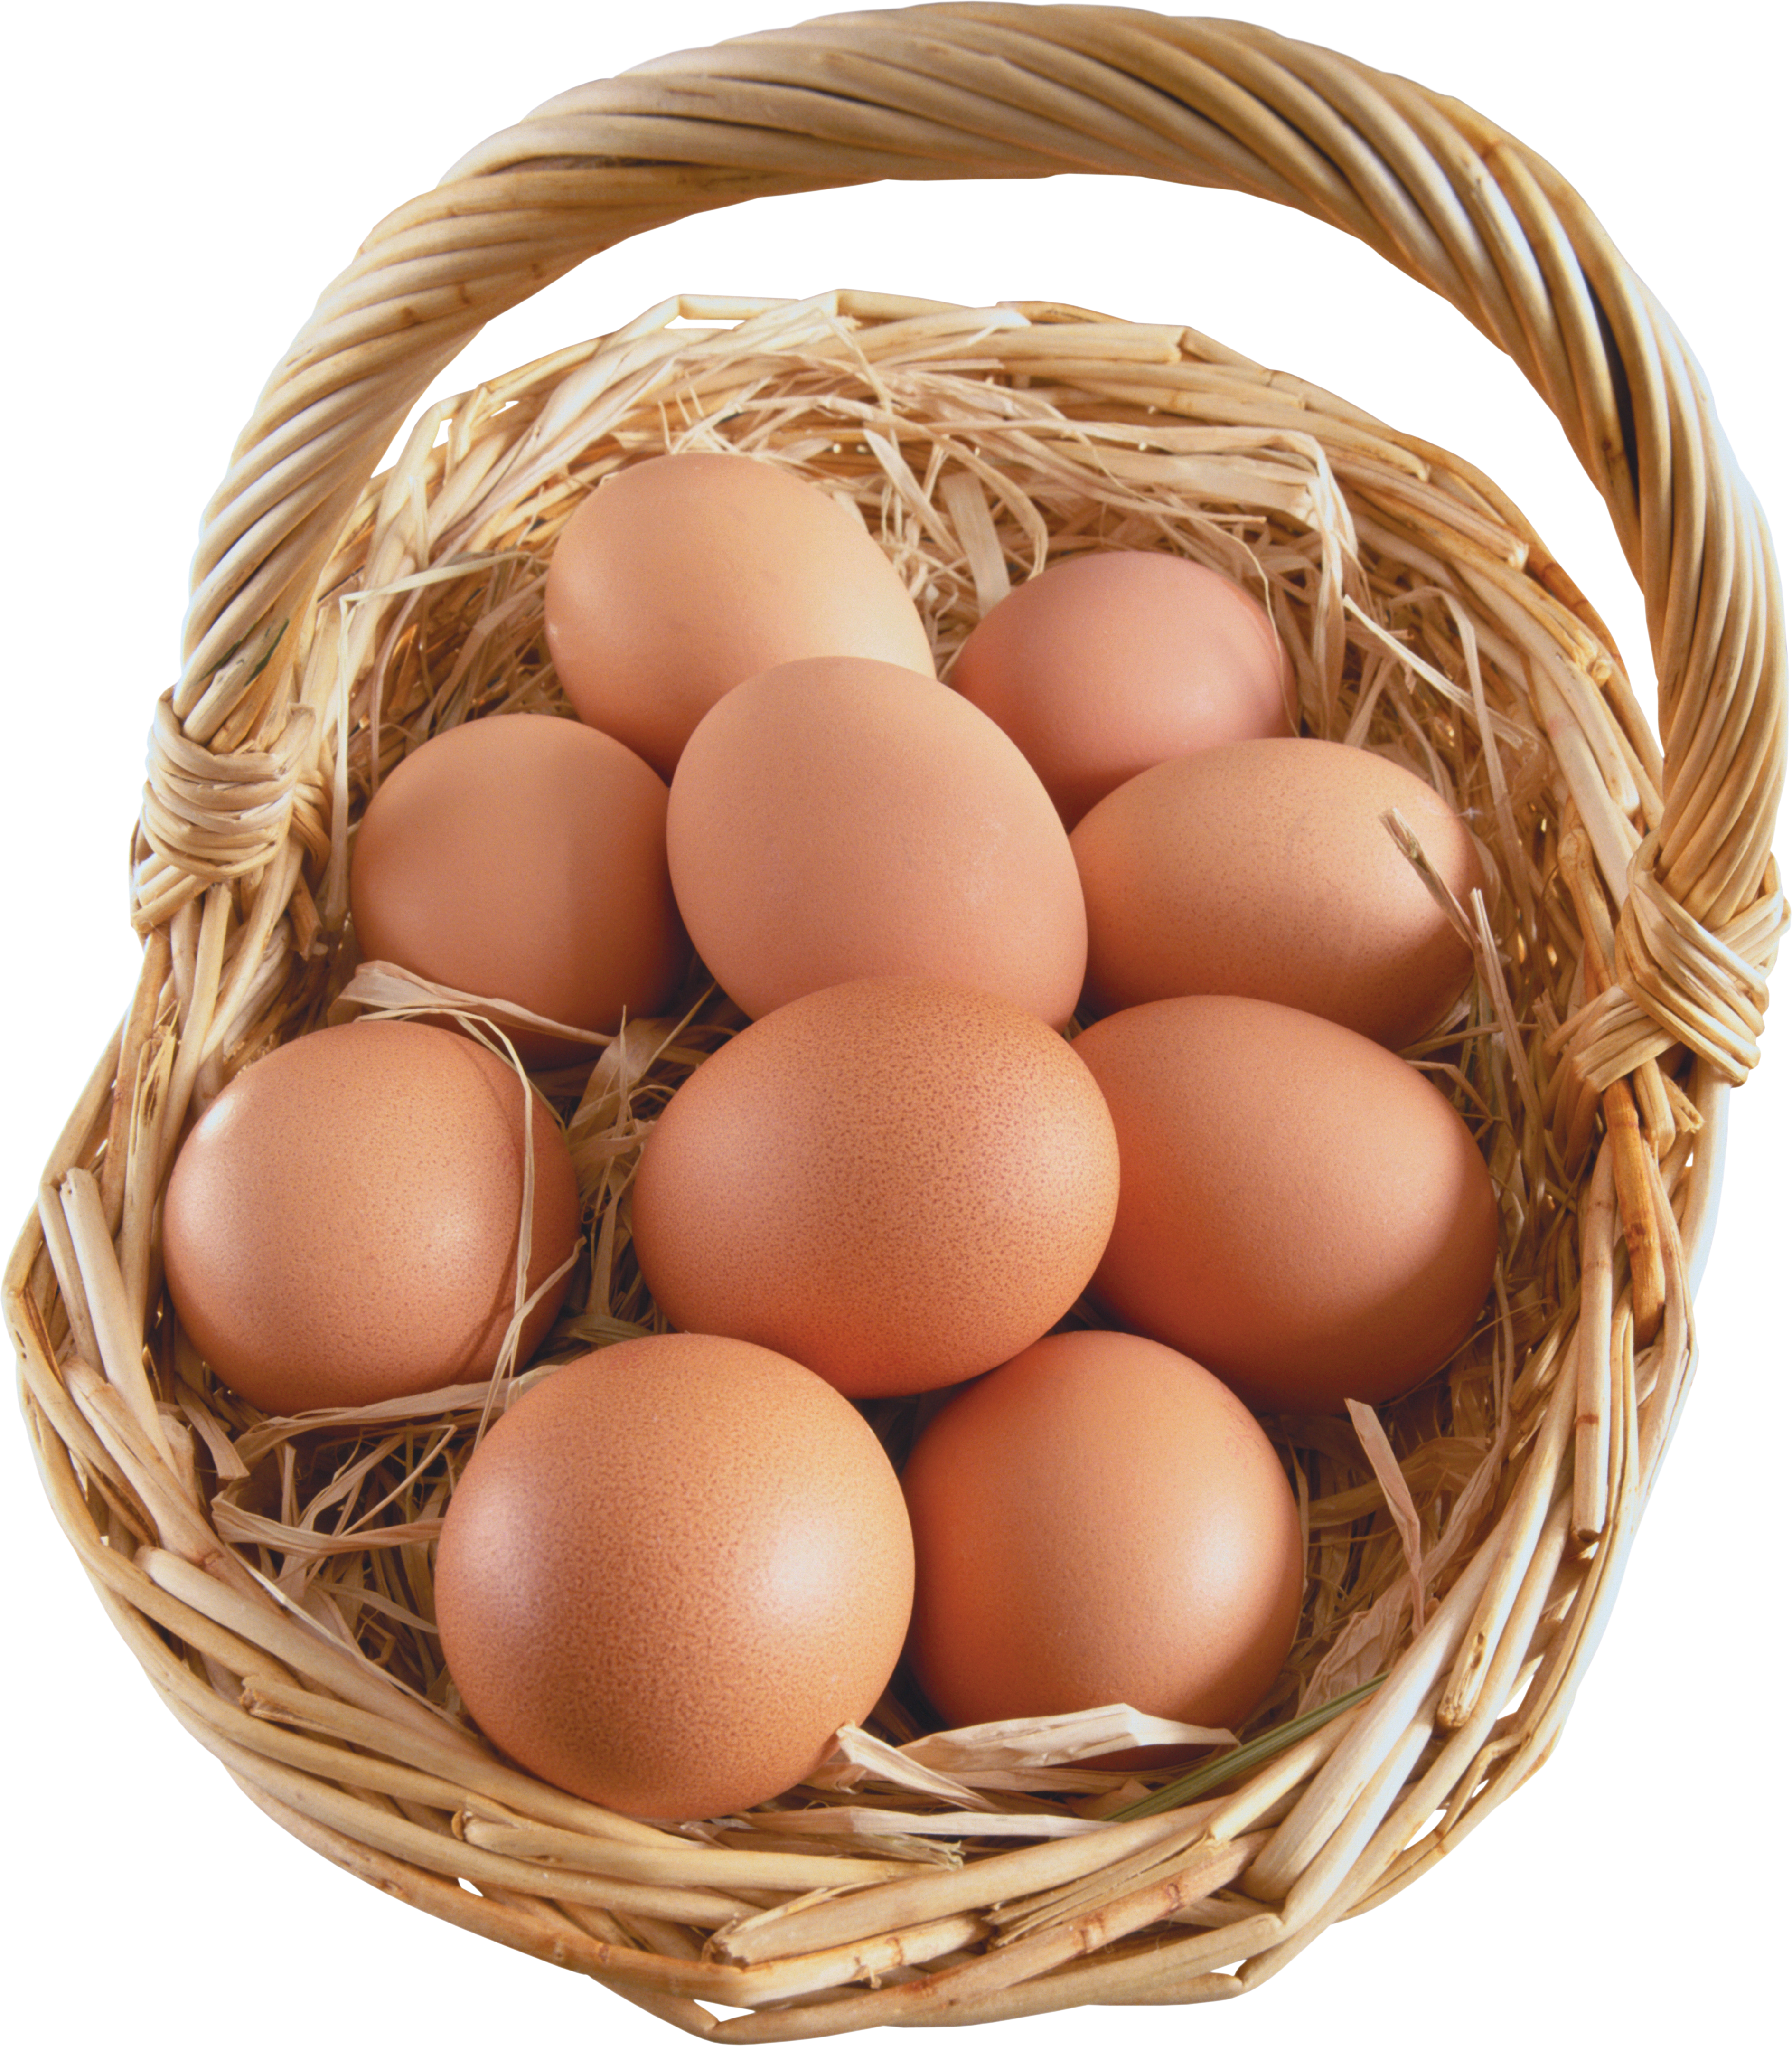 Trứng trong giỏ